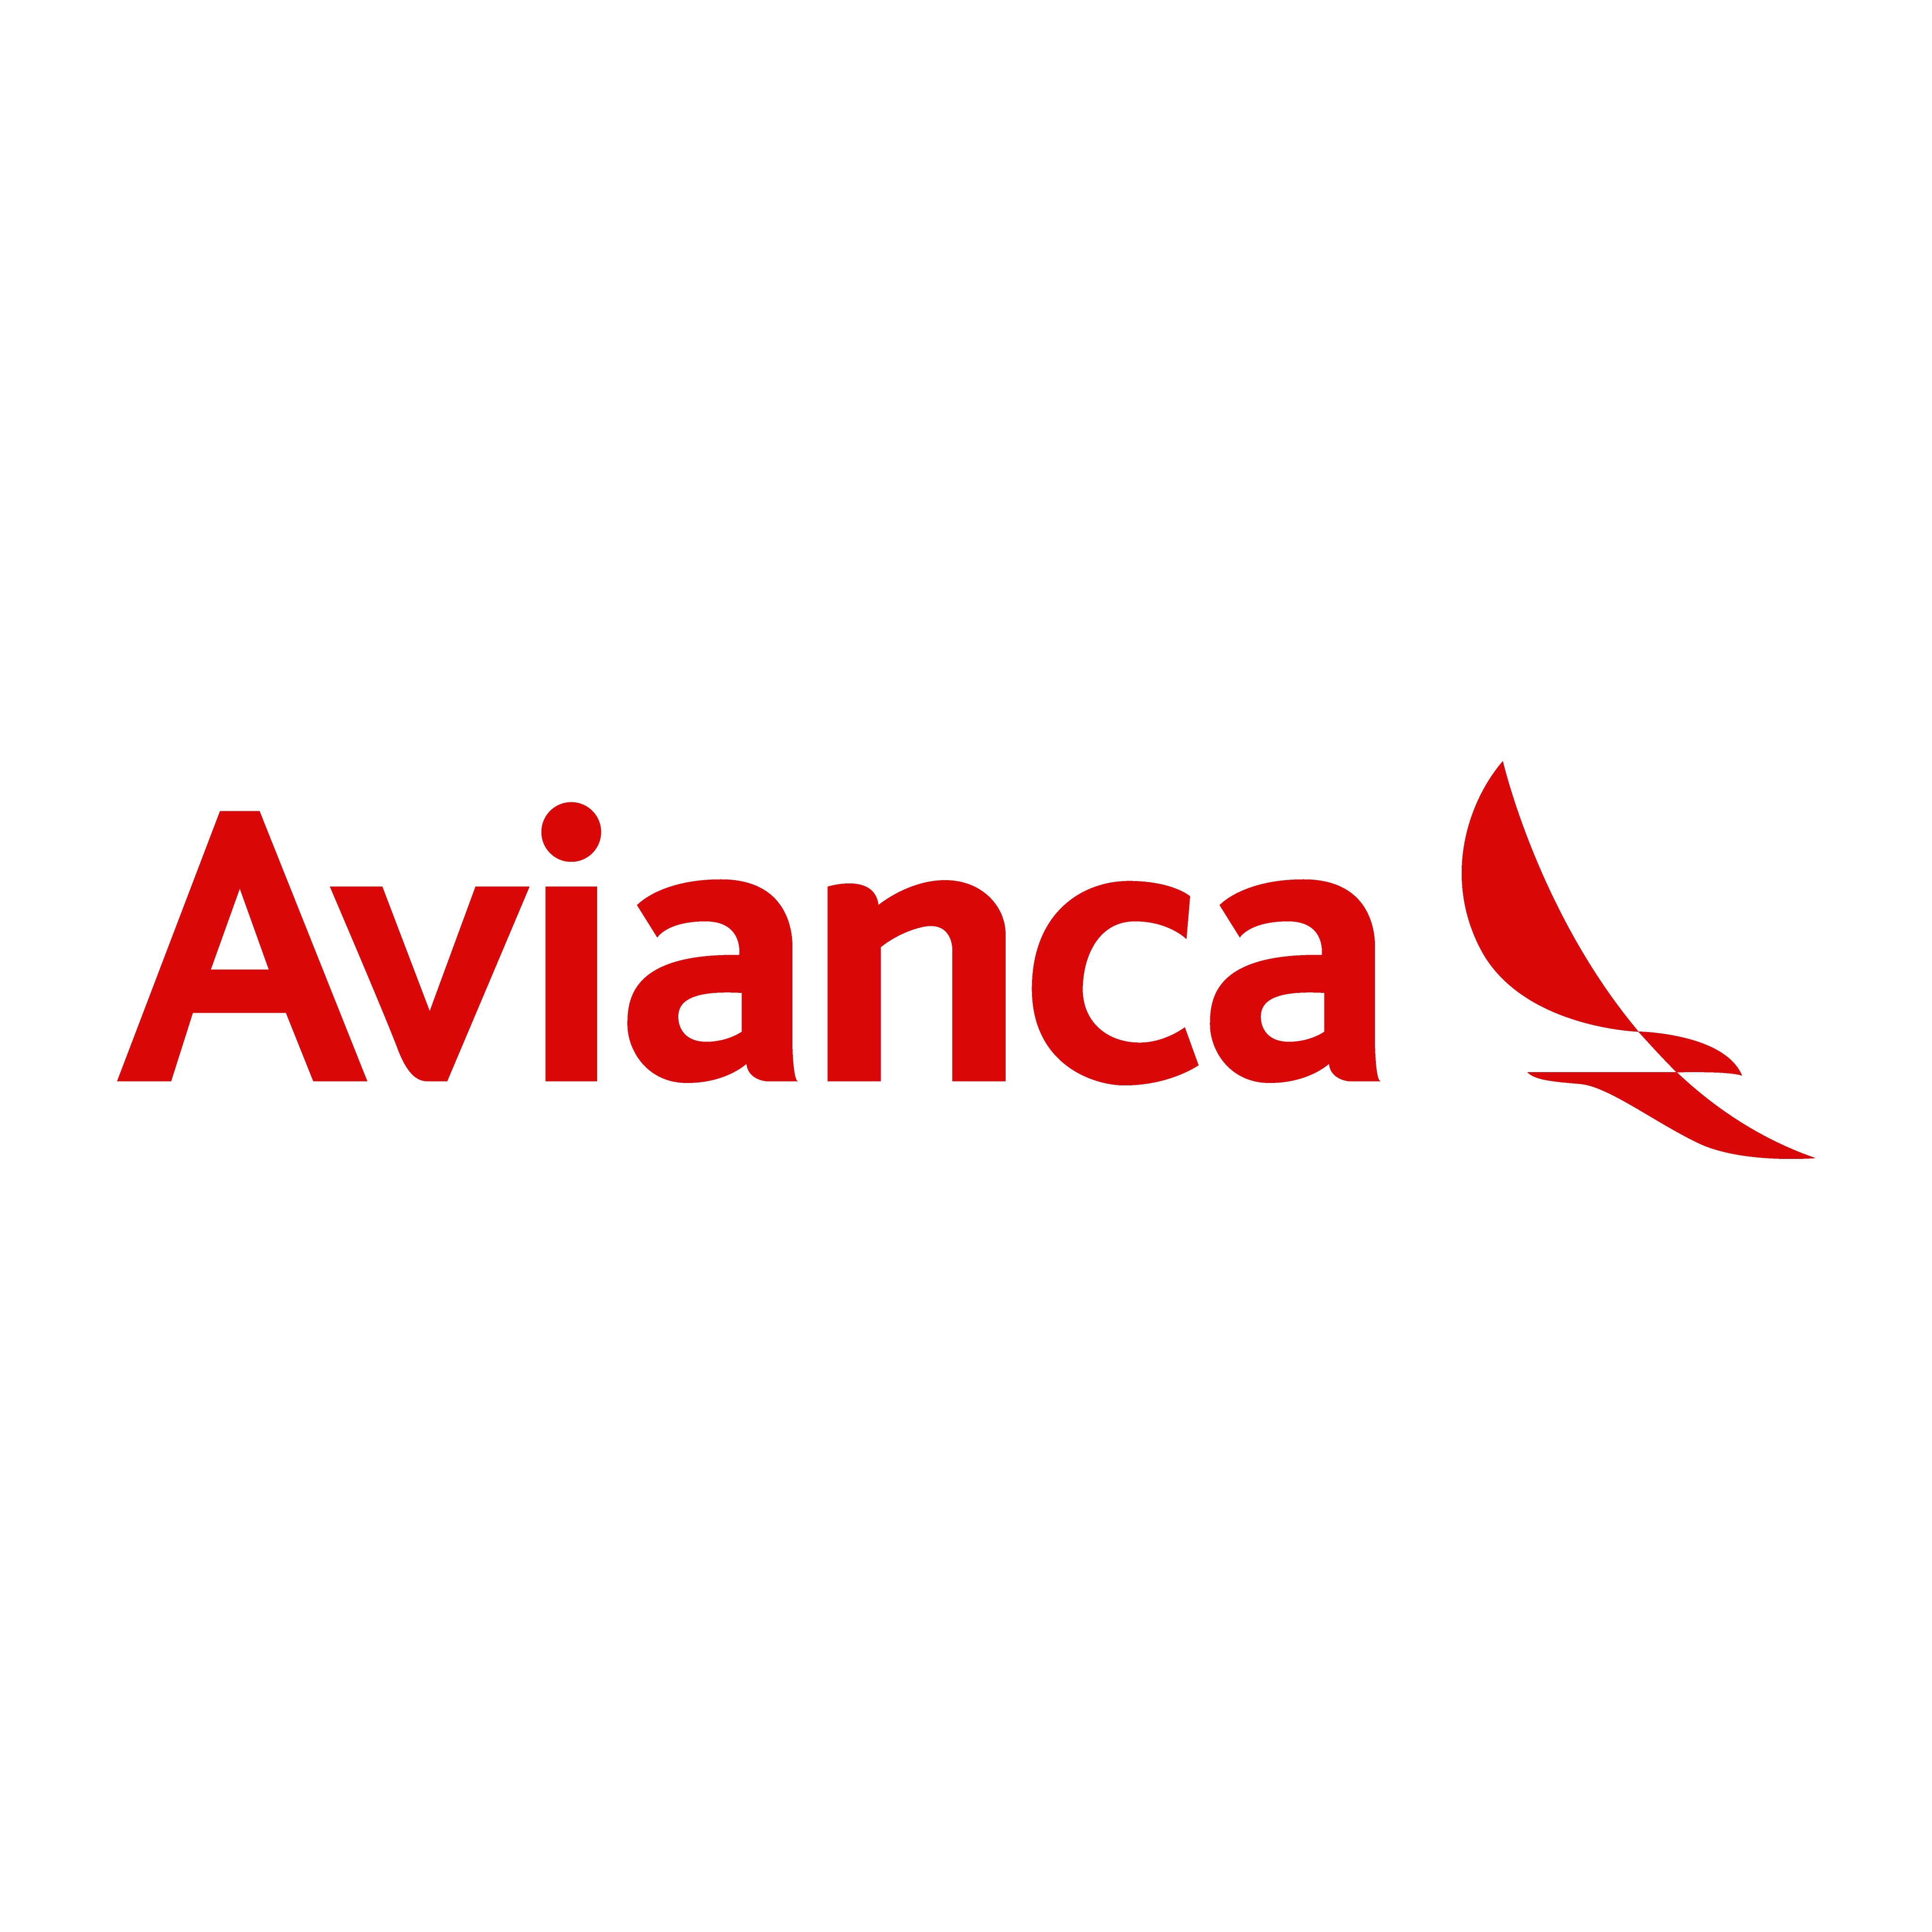 logo avianca